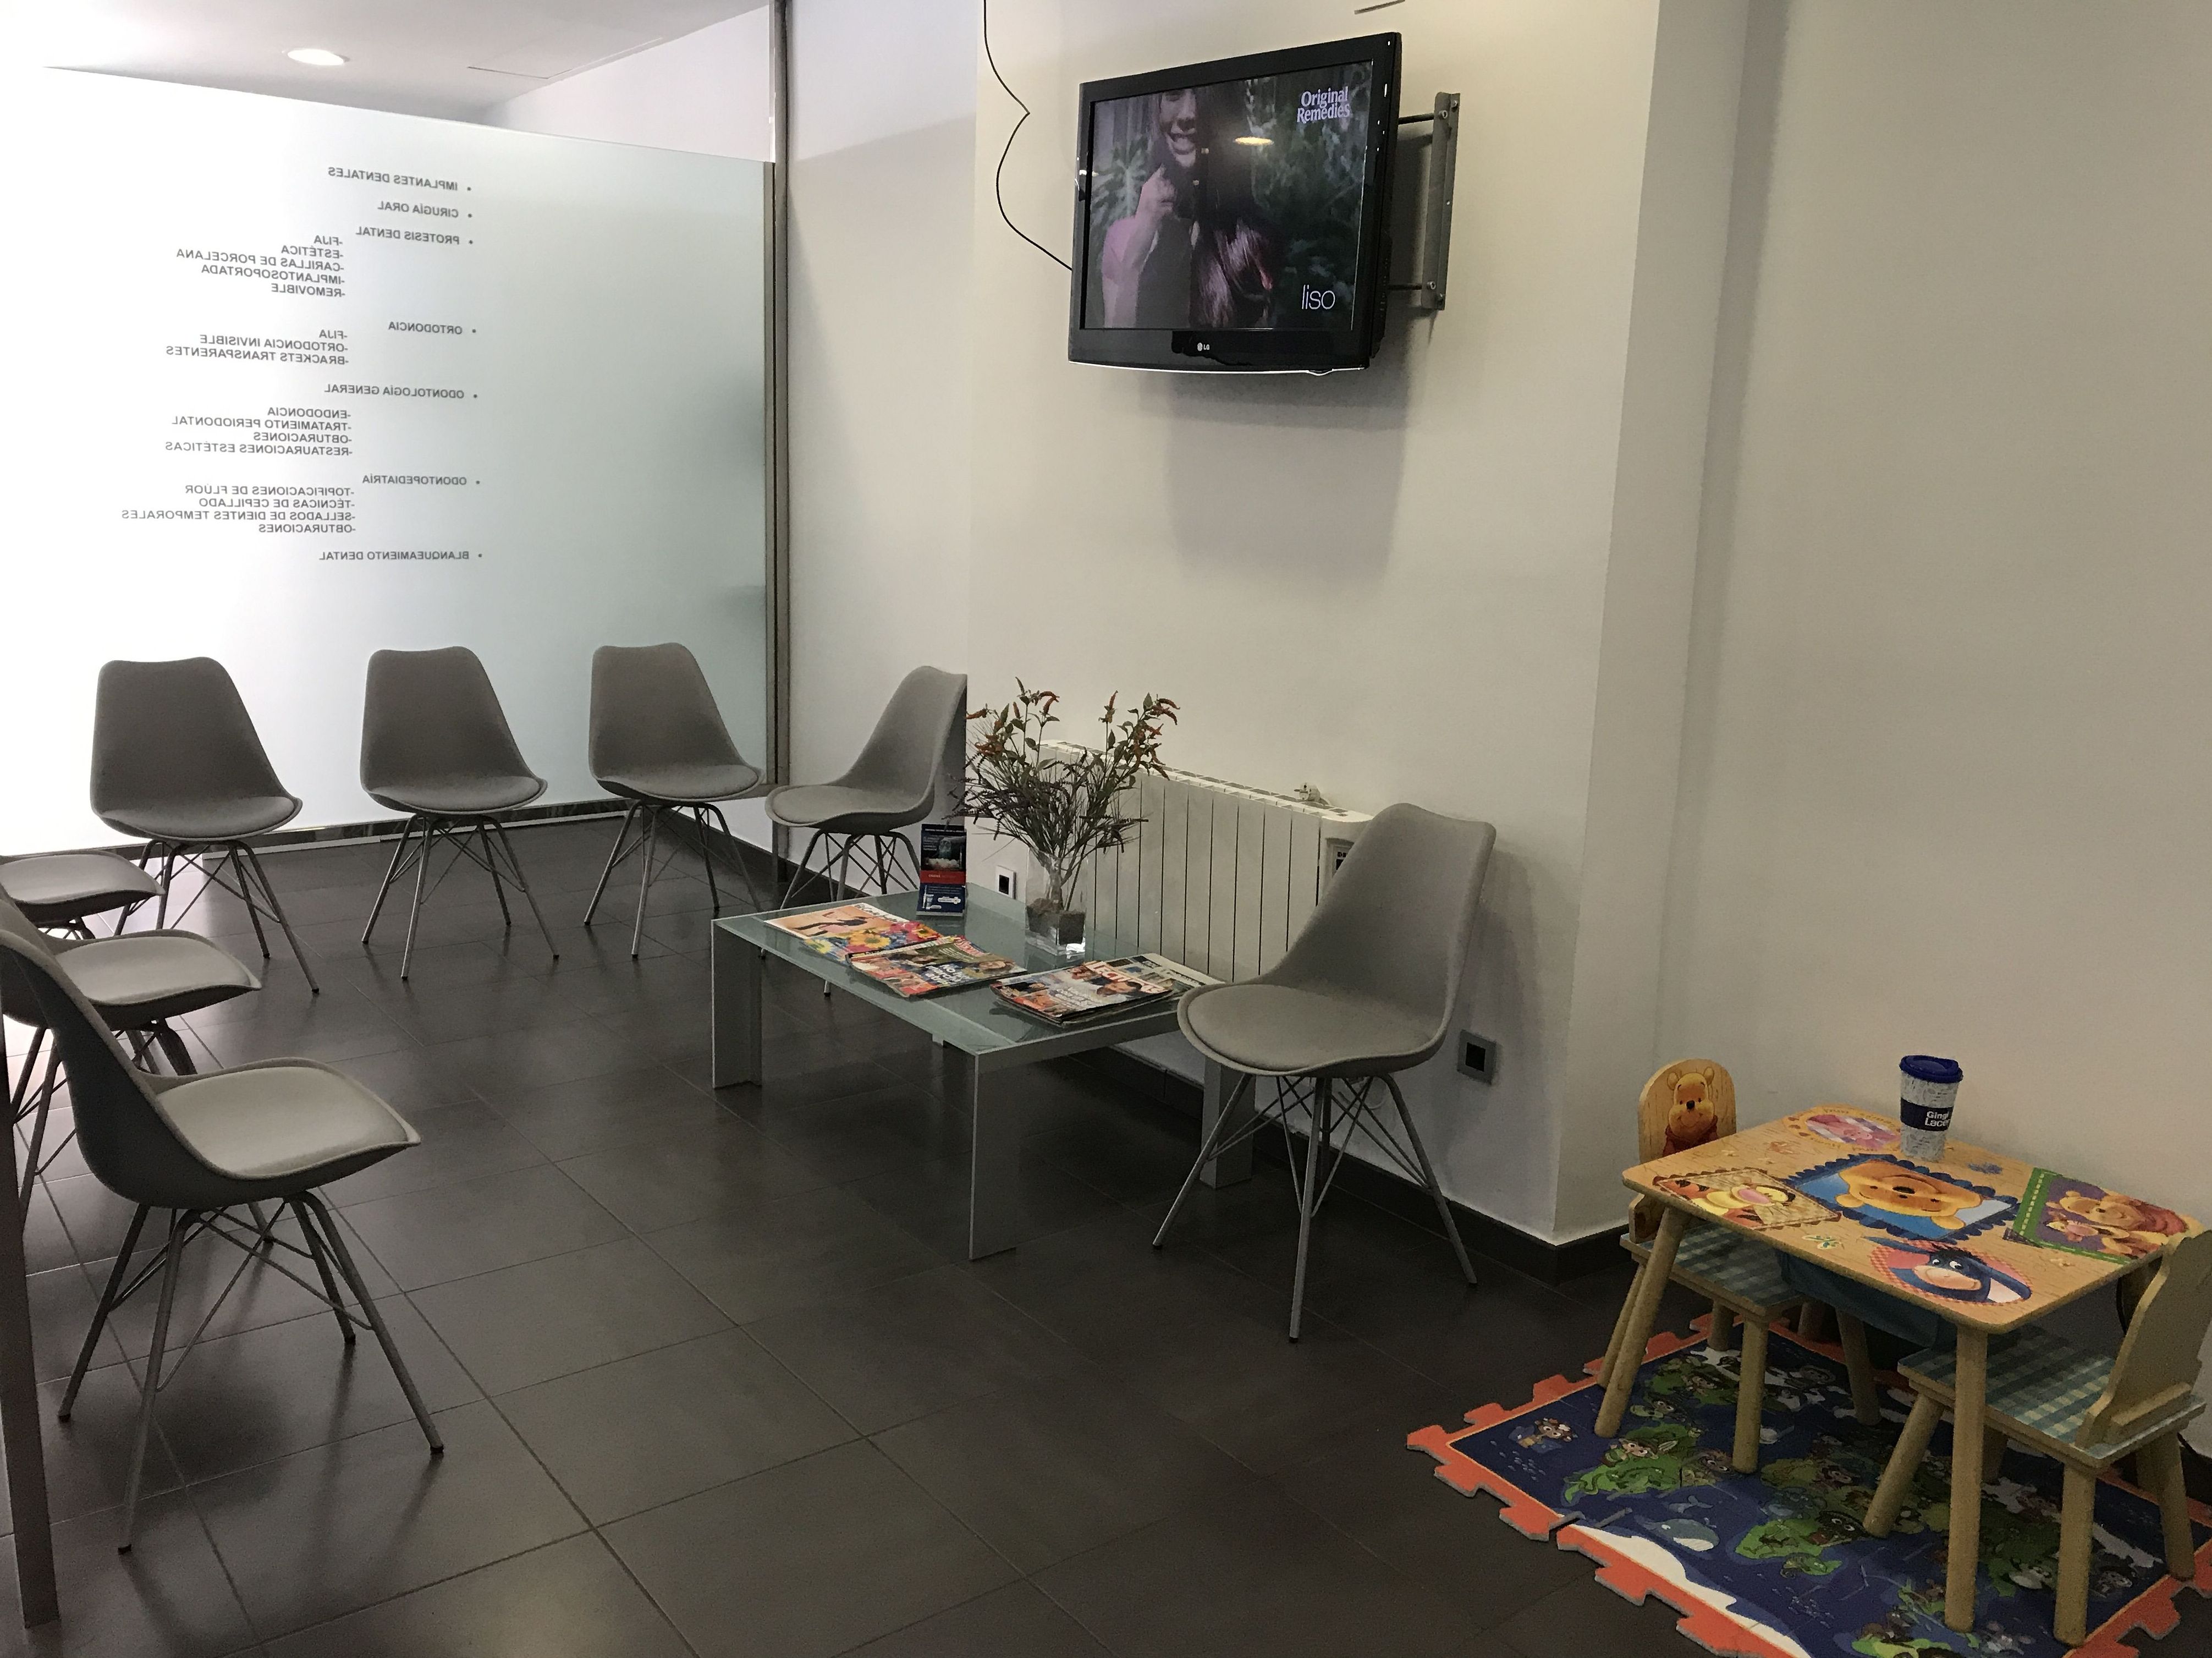 Sala de espera 2 Clínica dental Fortaña-Giménez en Torrent, Valencia